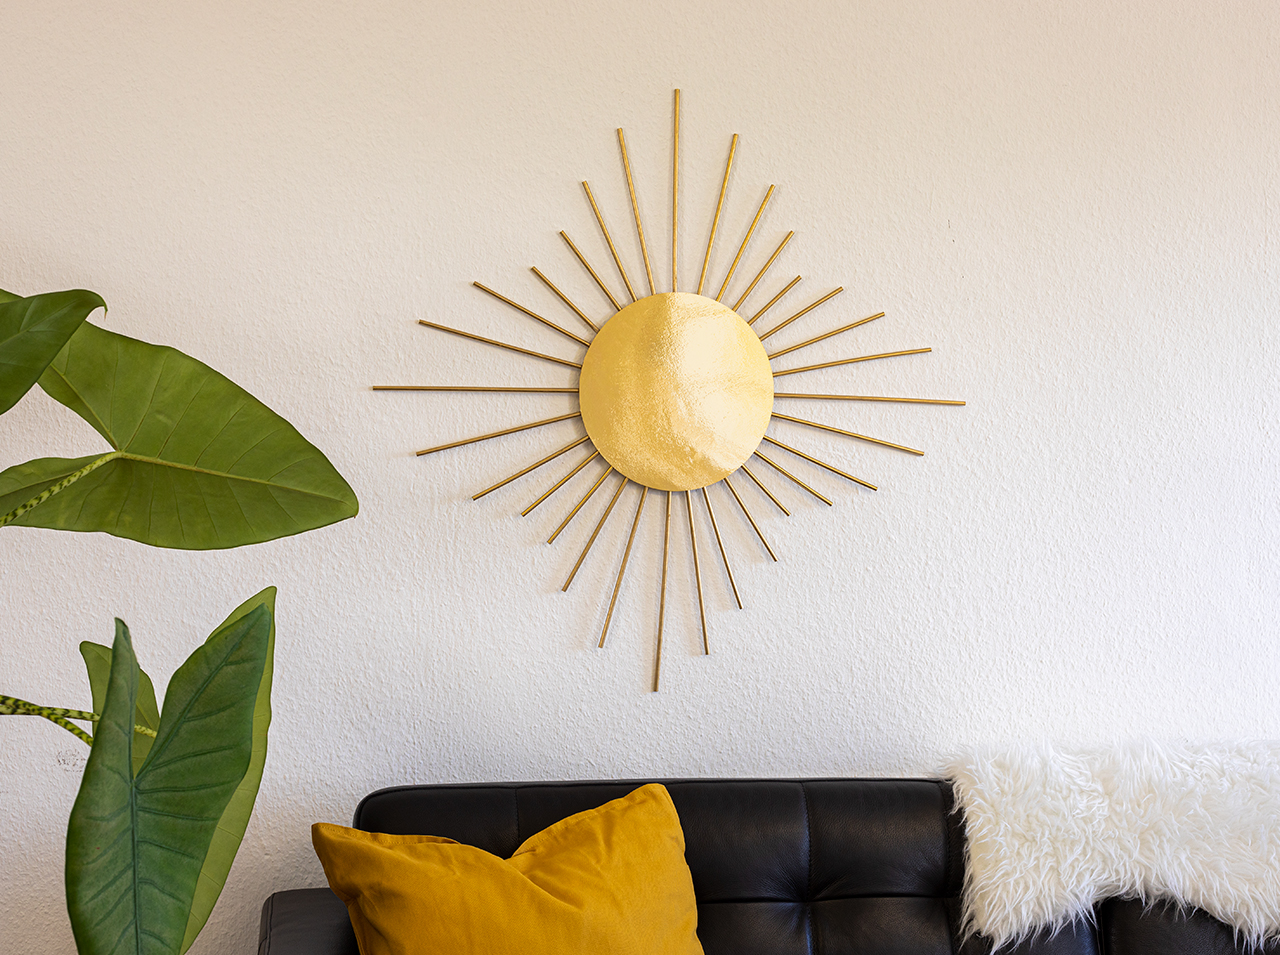 Specchio a forma di sole con una cornice realizzata con una pellicola a specchio dorata e bastoncini dorati, appeso a una parete bianca.